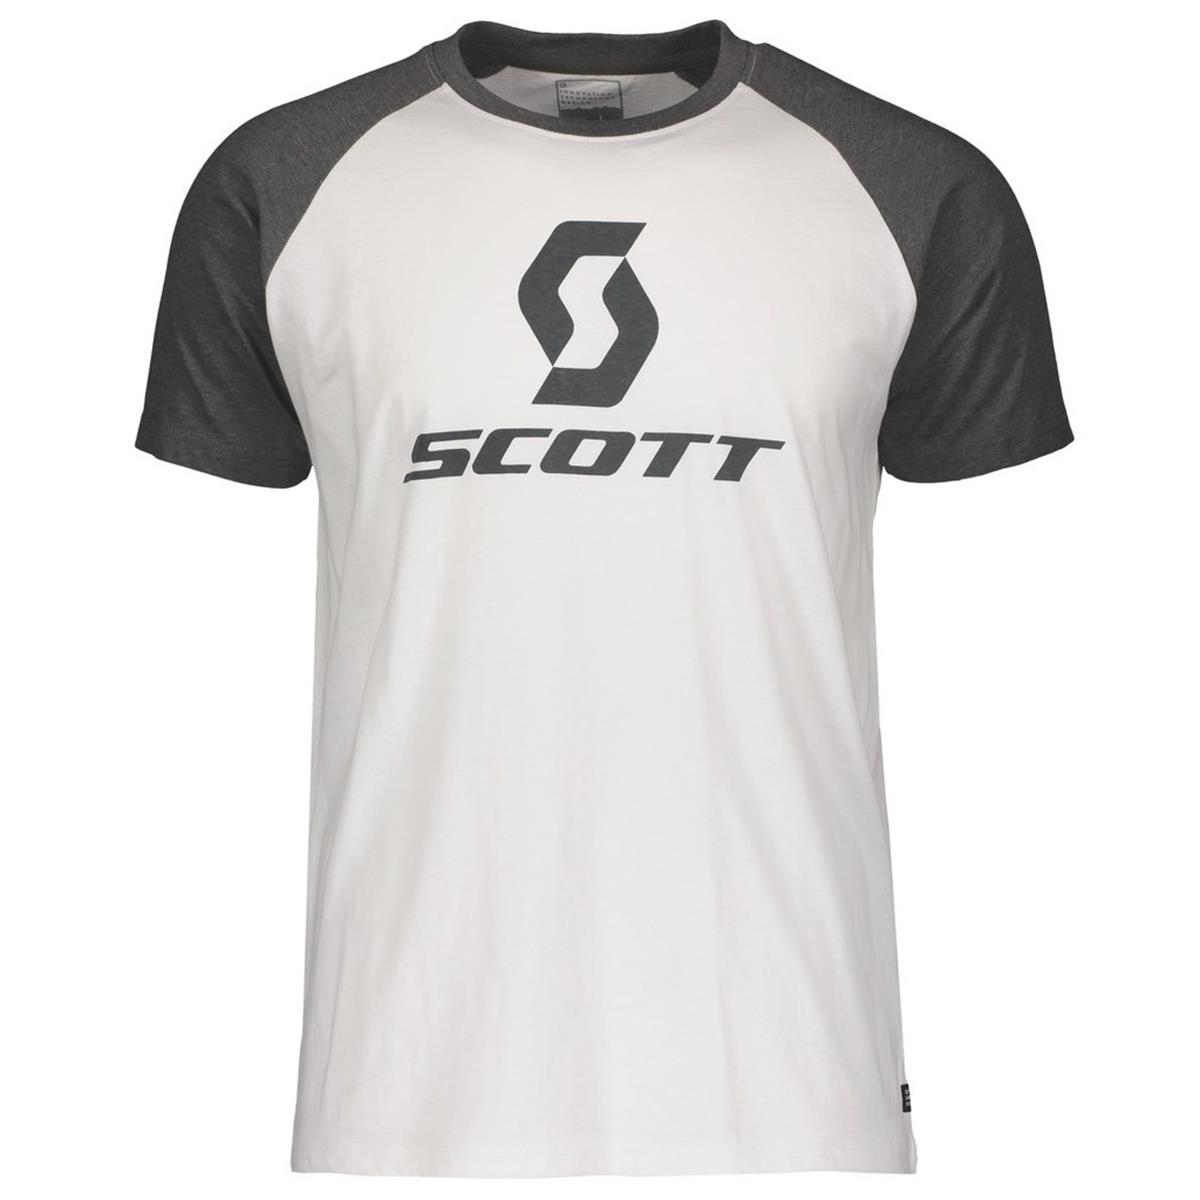 Scott T-Shirt 10 Icon Raglan Weiß/Dark Grey Melange